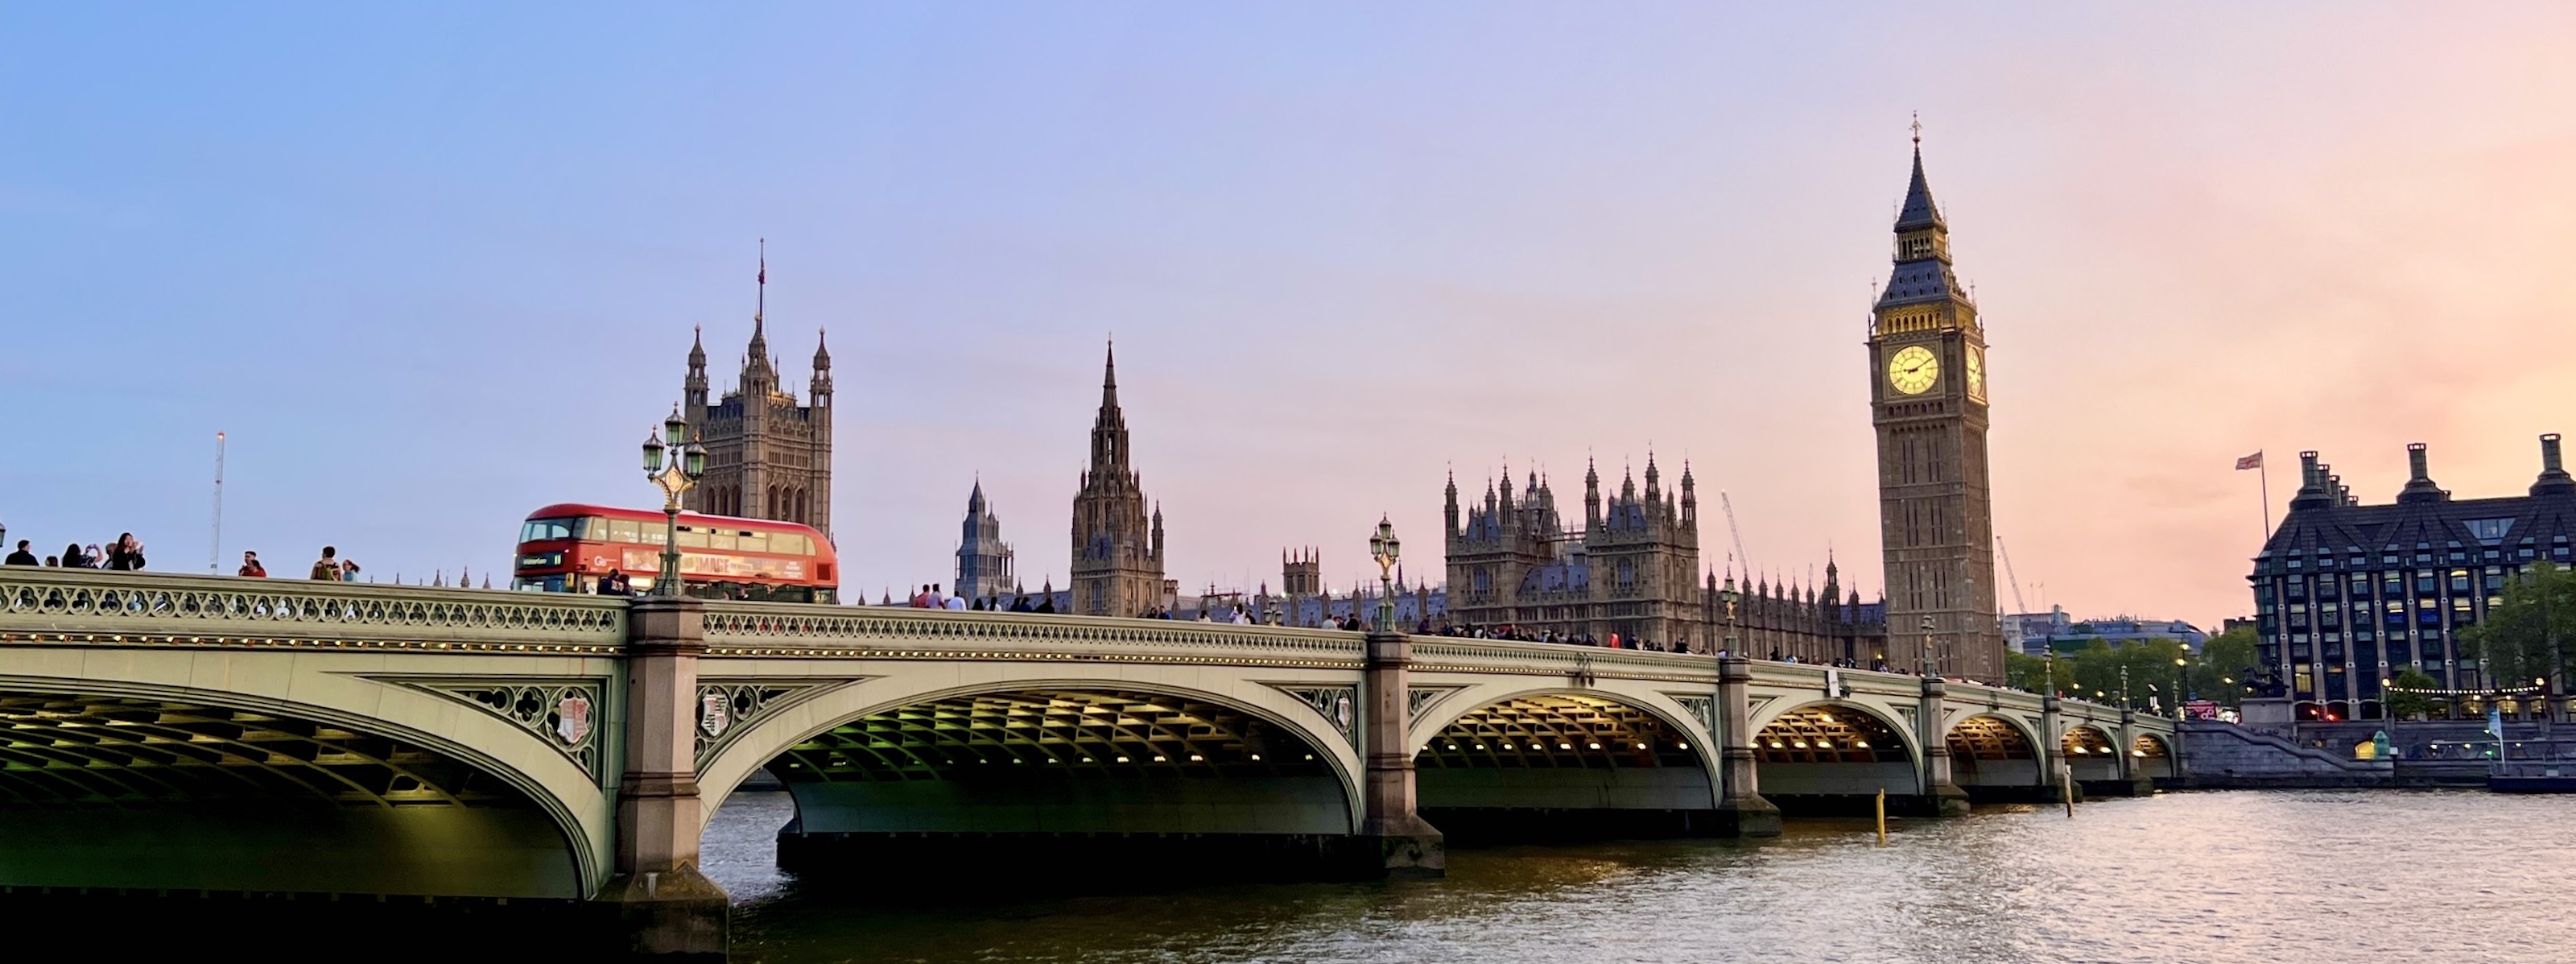 Os 10 lugares imperdíveis em Londres - Uma ponte para Londres